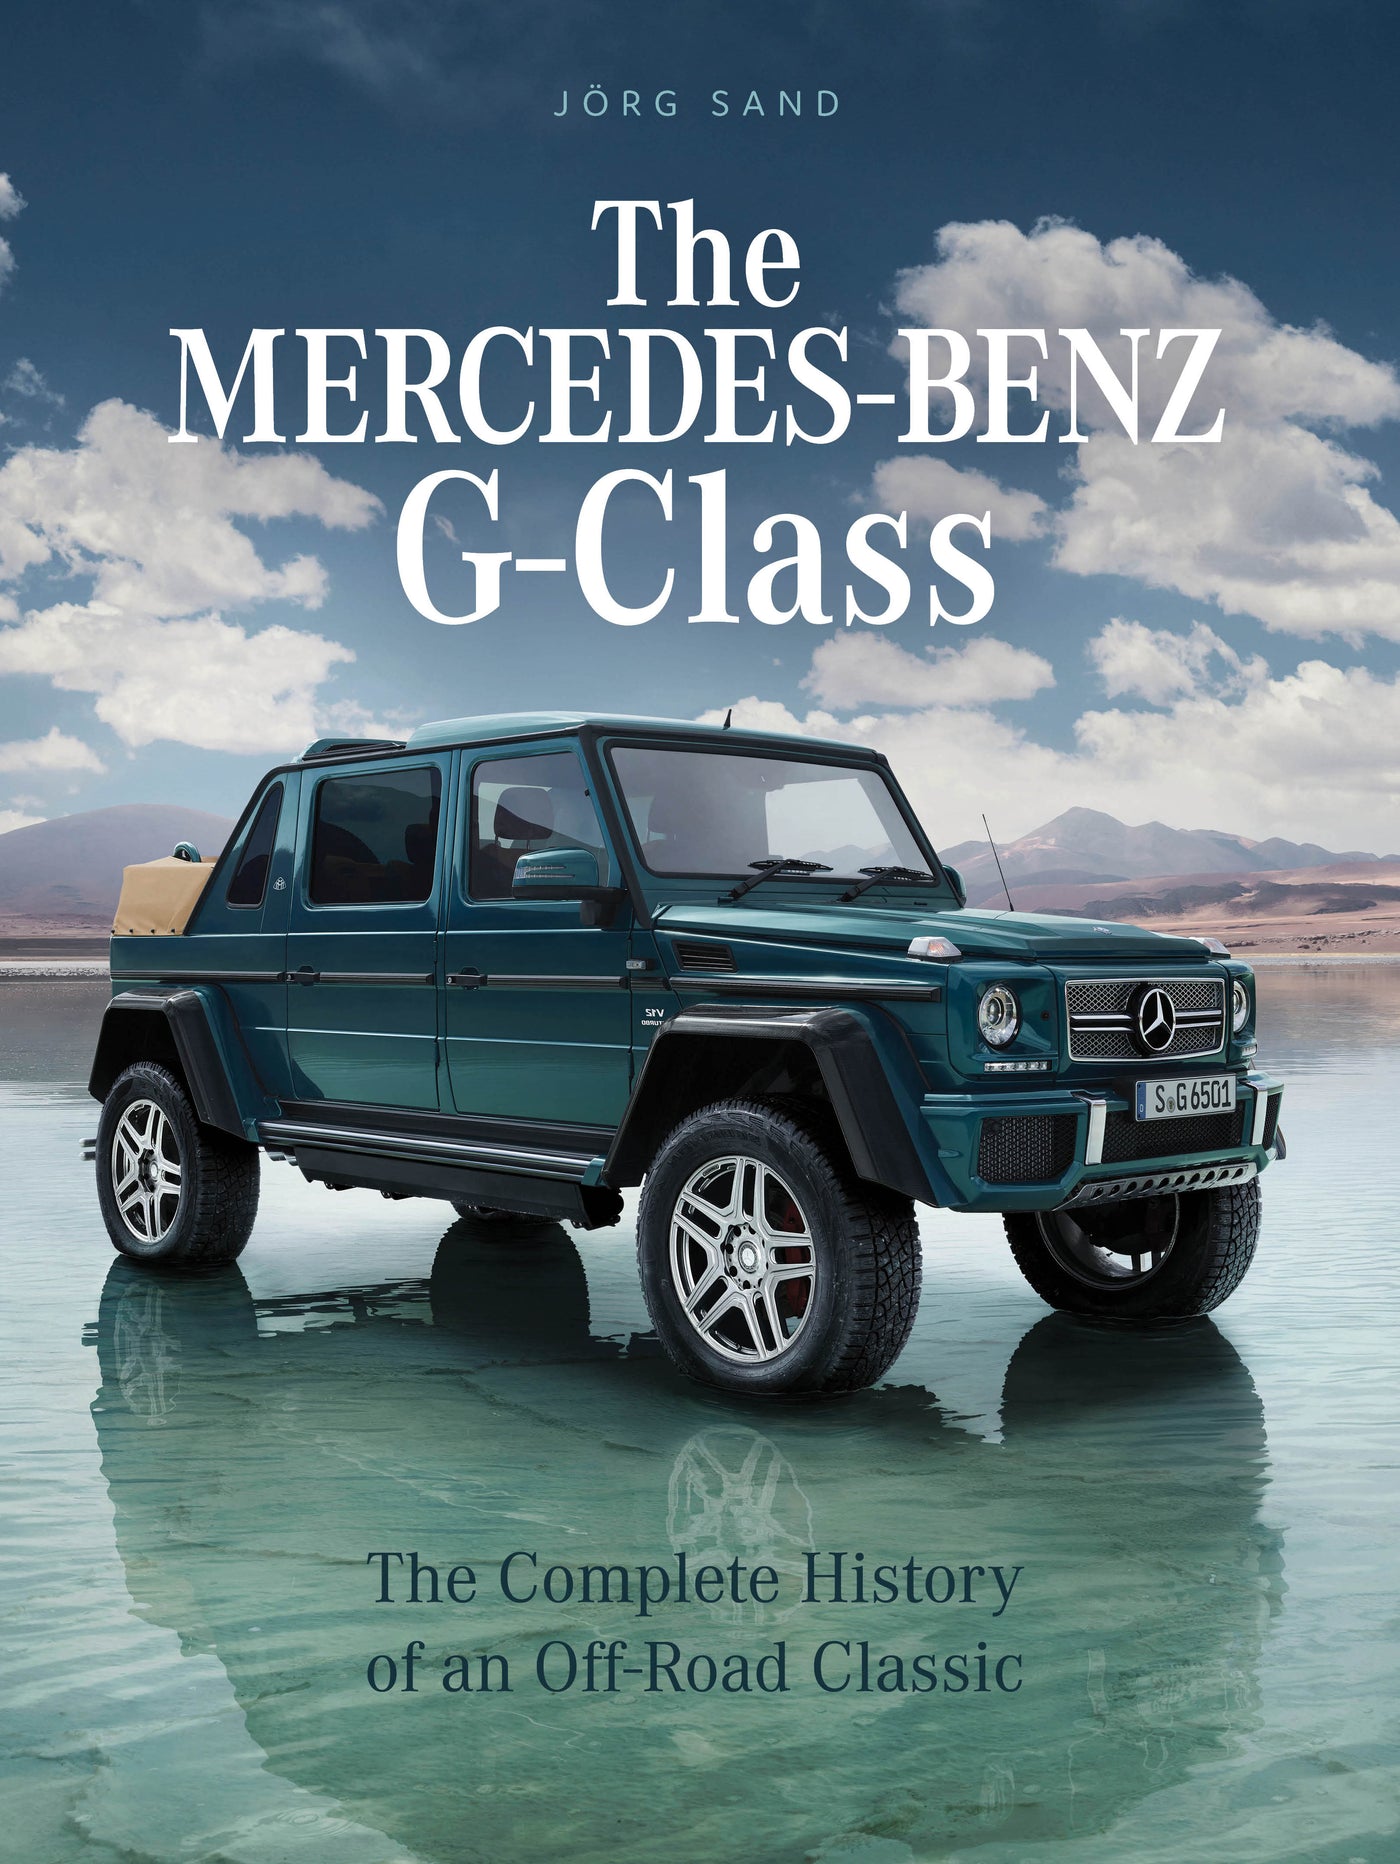 The Mercedes-Benz G-Class